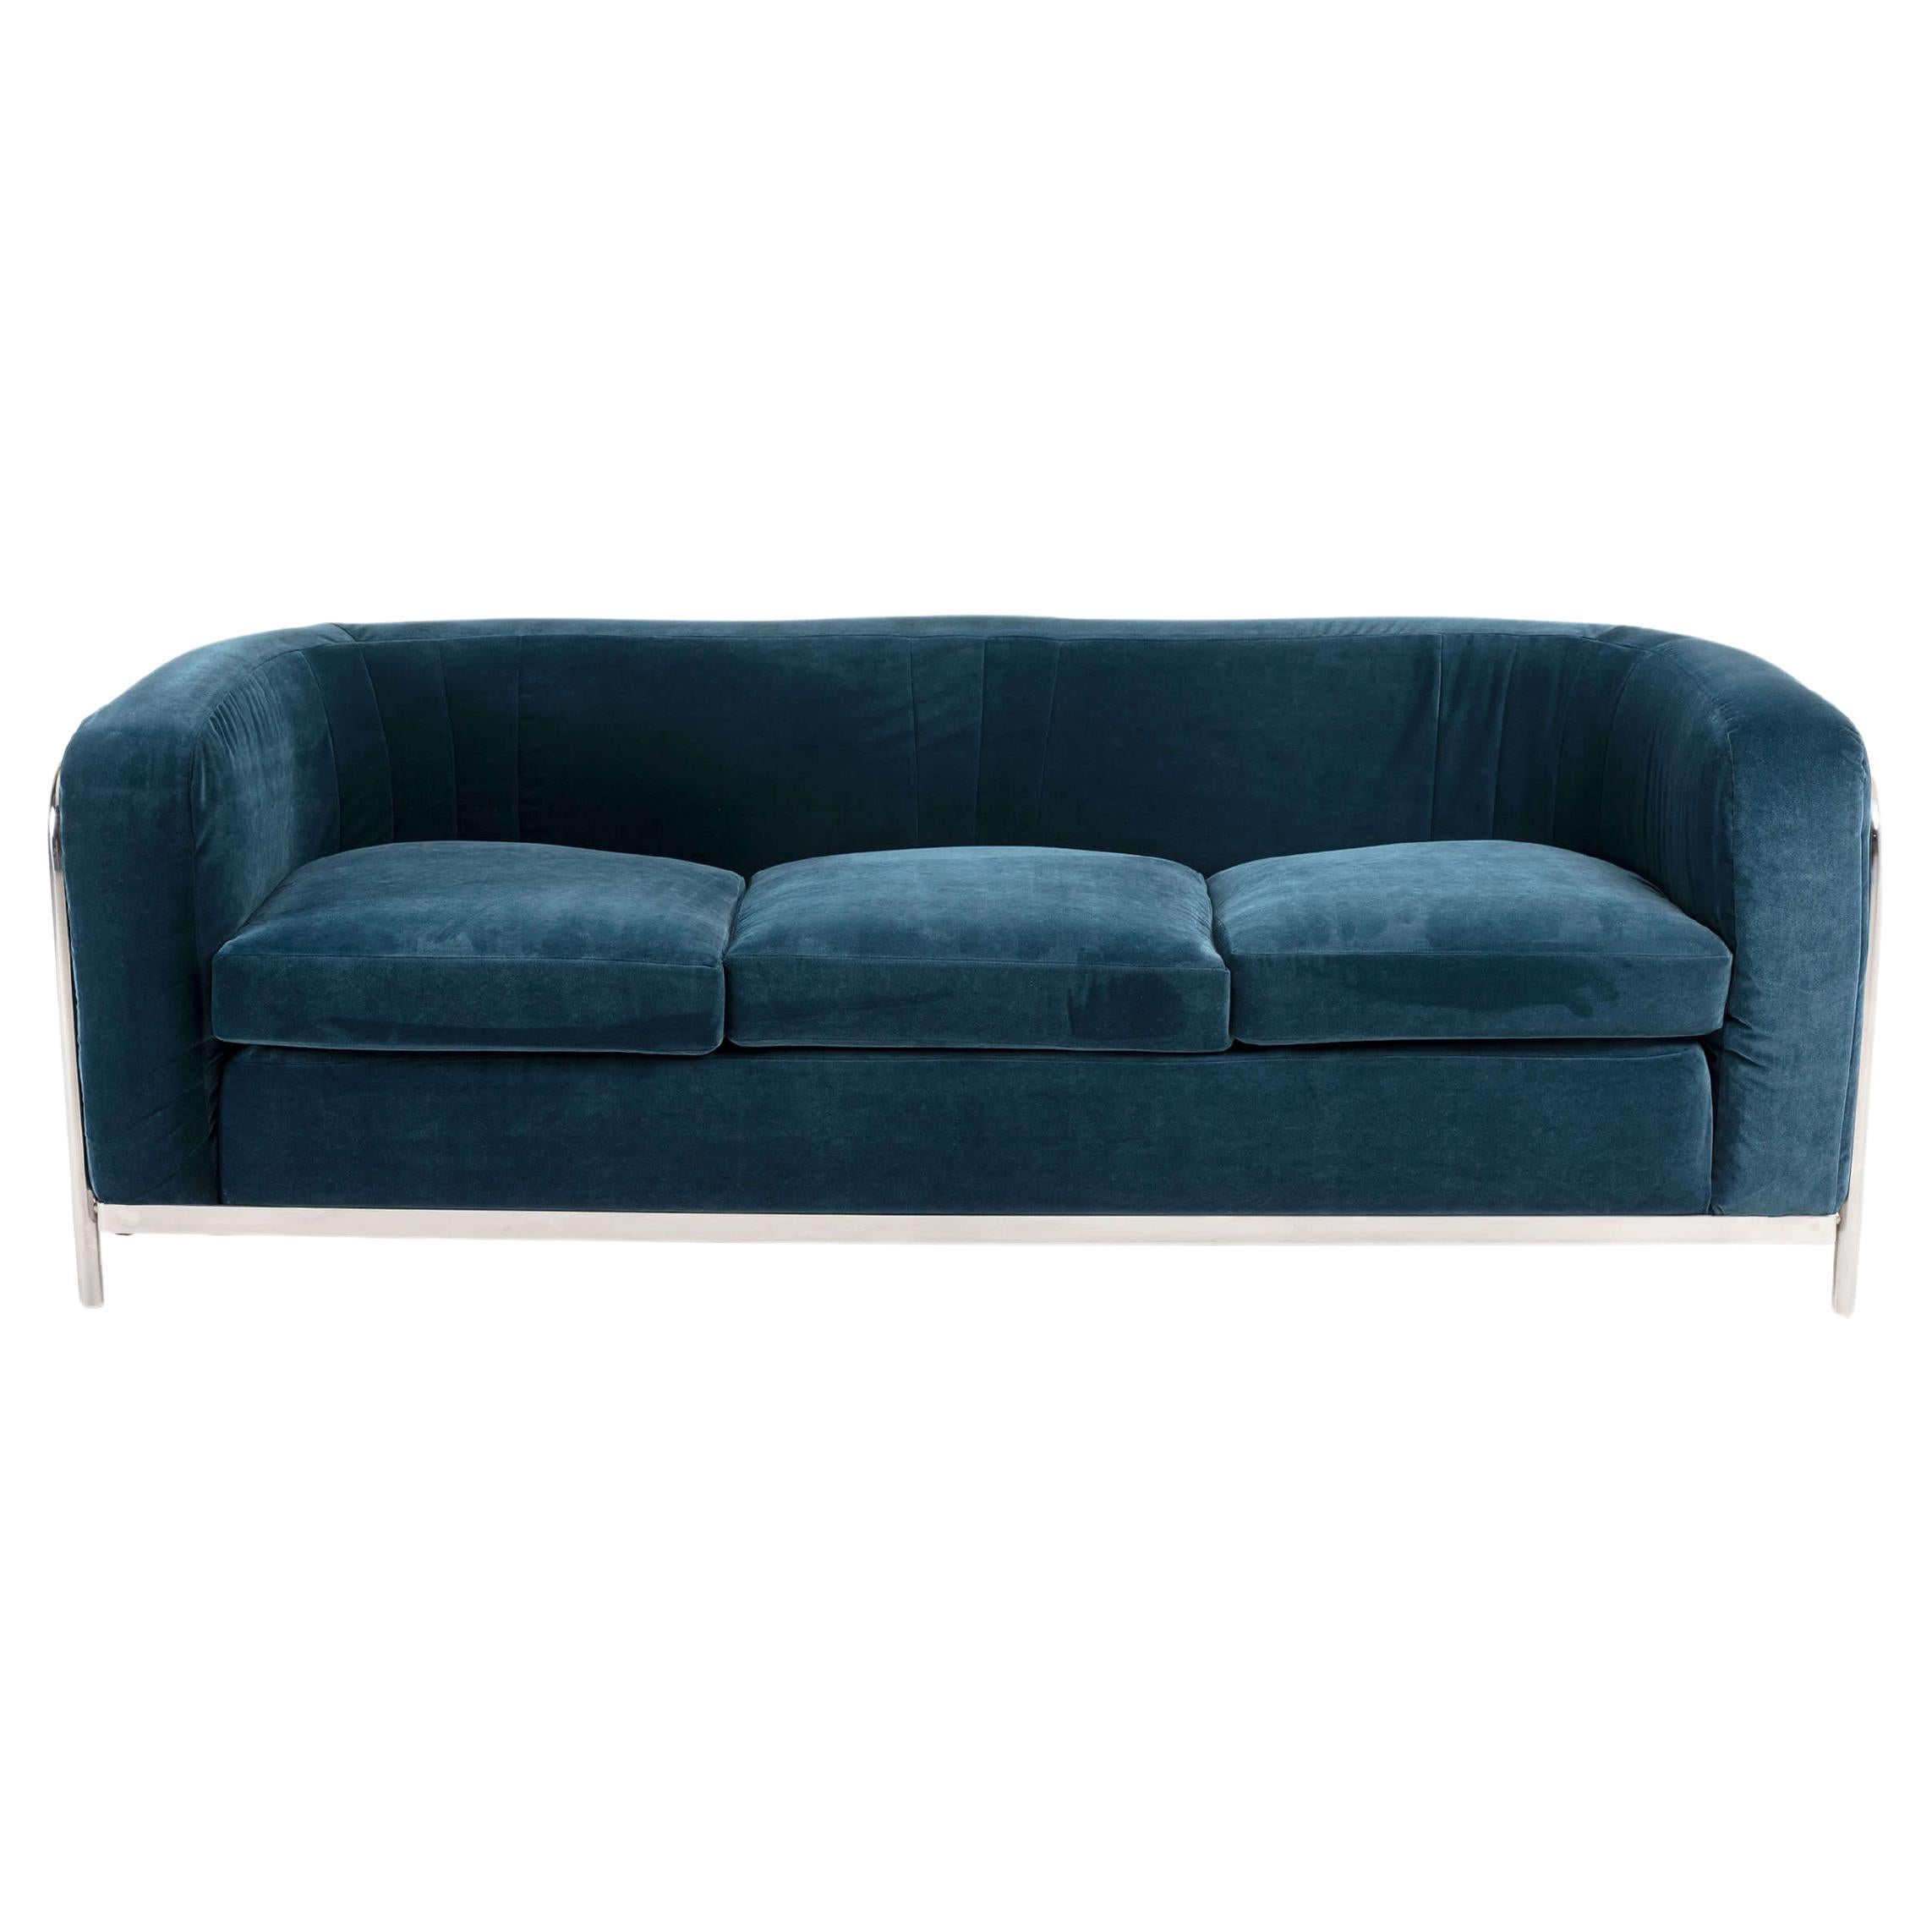 Onda 3-Seater Sofa for Zanotta, Chrome Steel Frame, Teal Velvet Upholster, 1970s